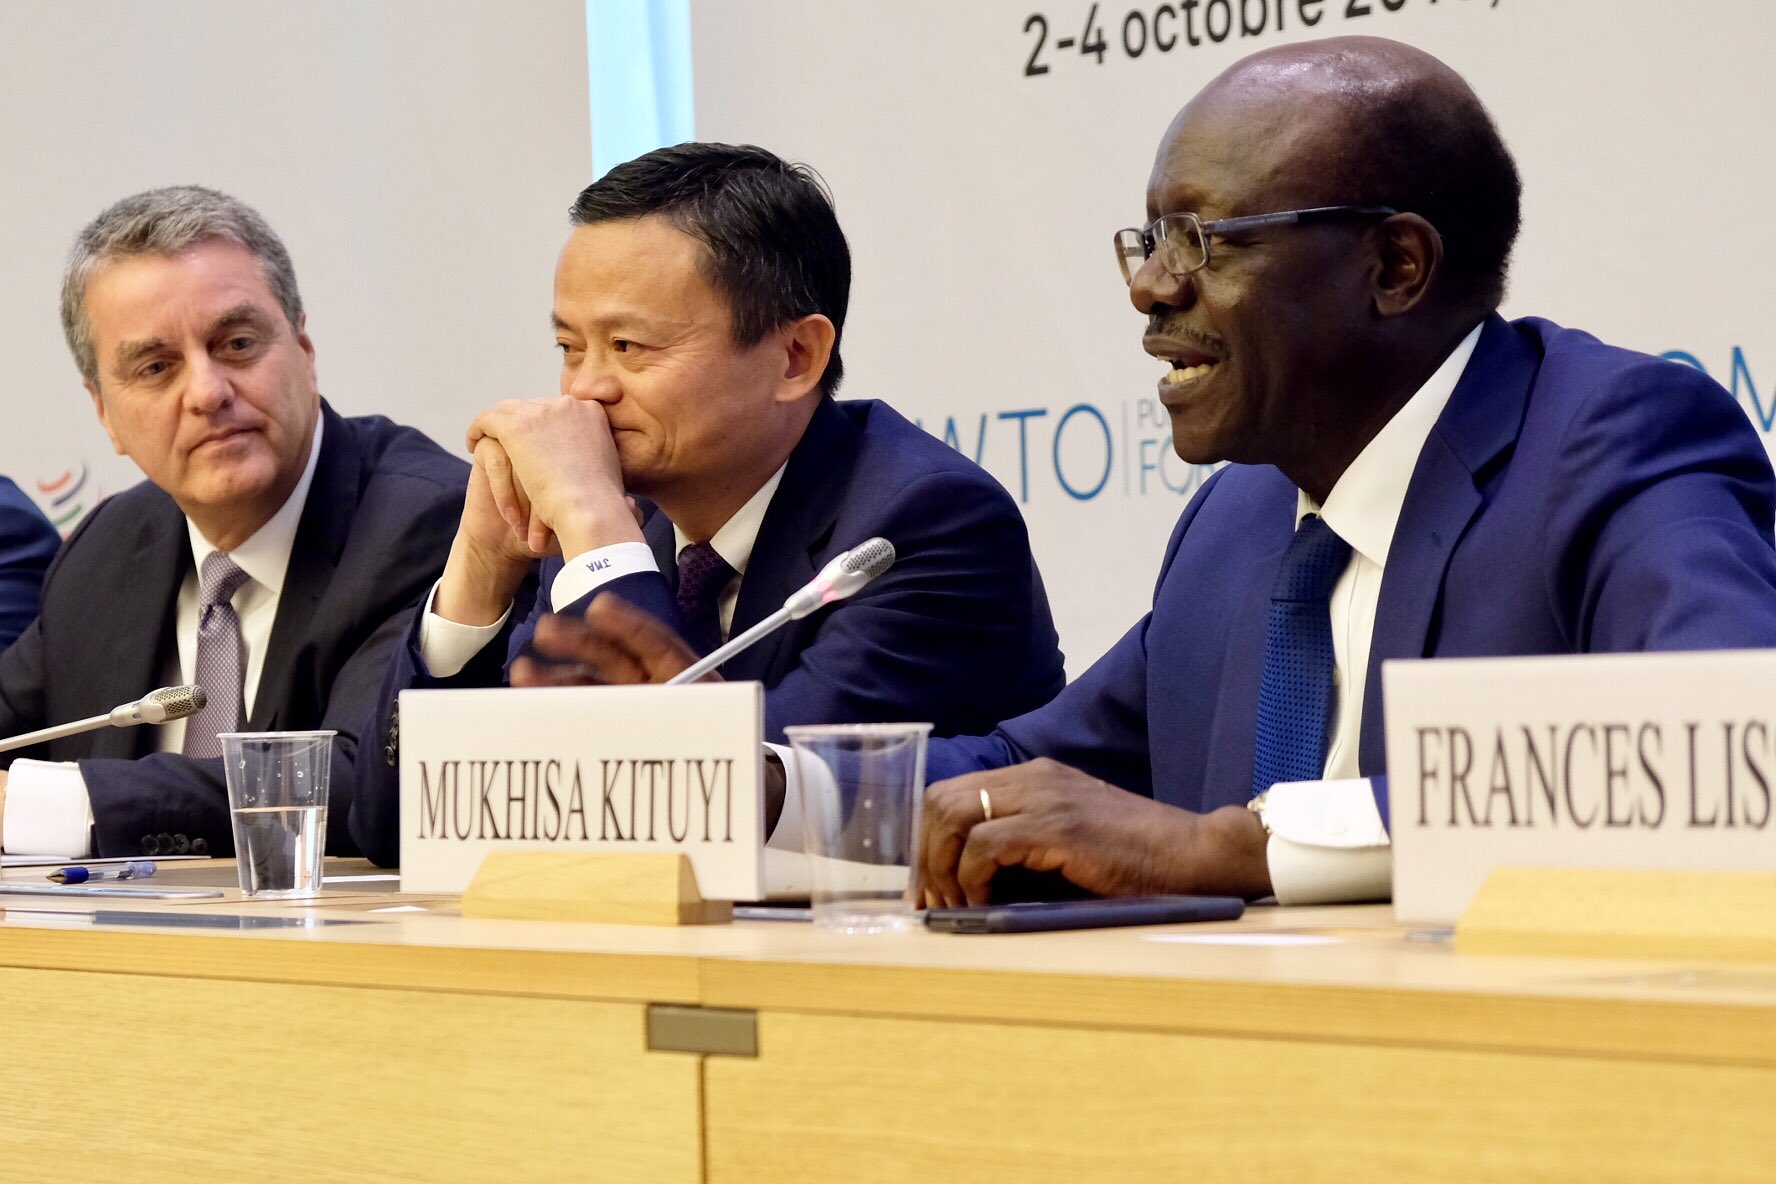 如何让全球化更完善？马云在WTO提出“变革、普惠和合作”